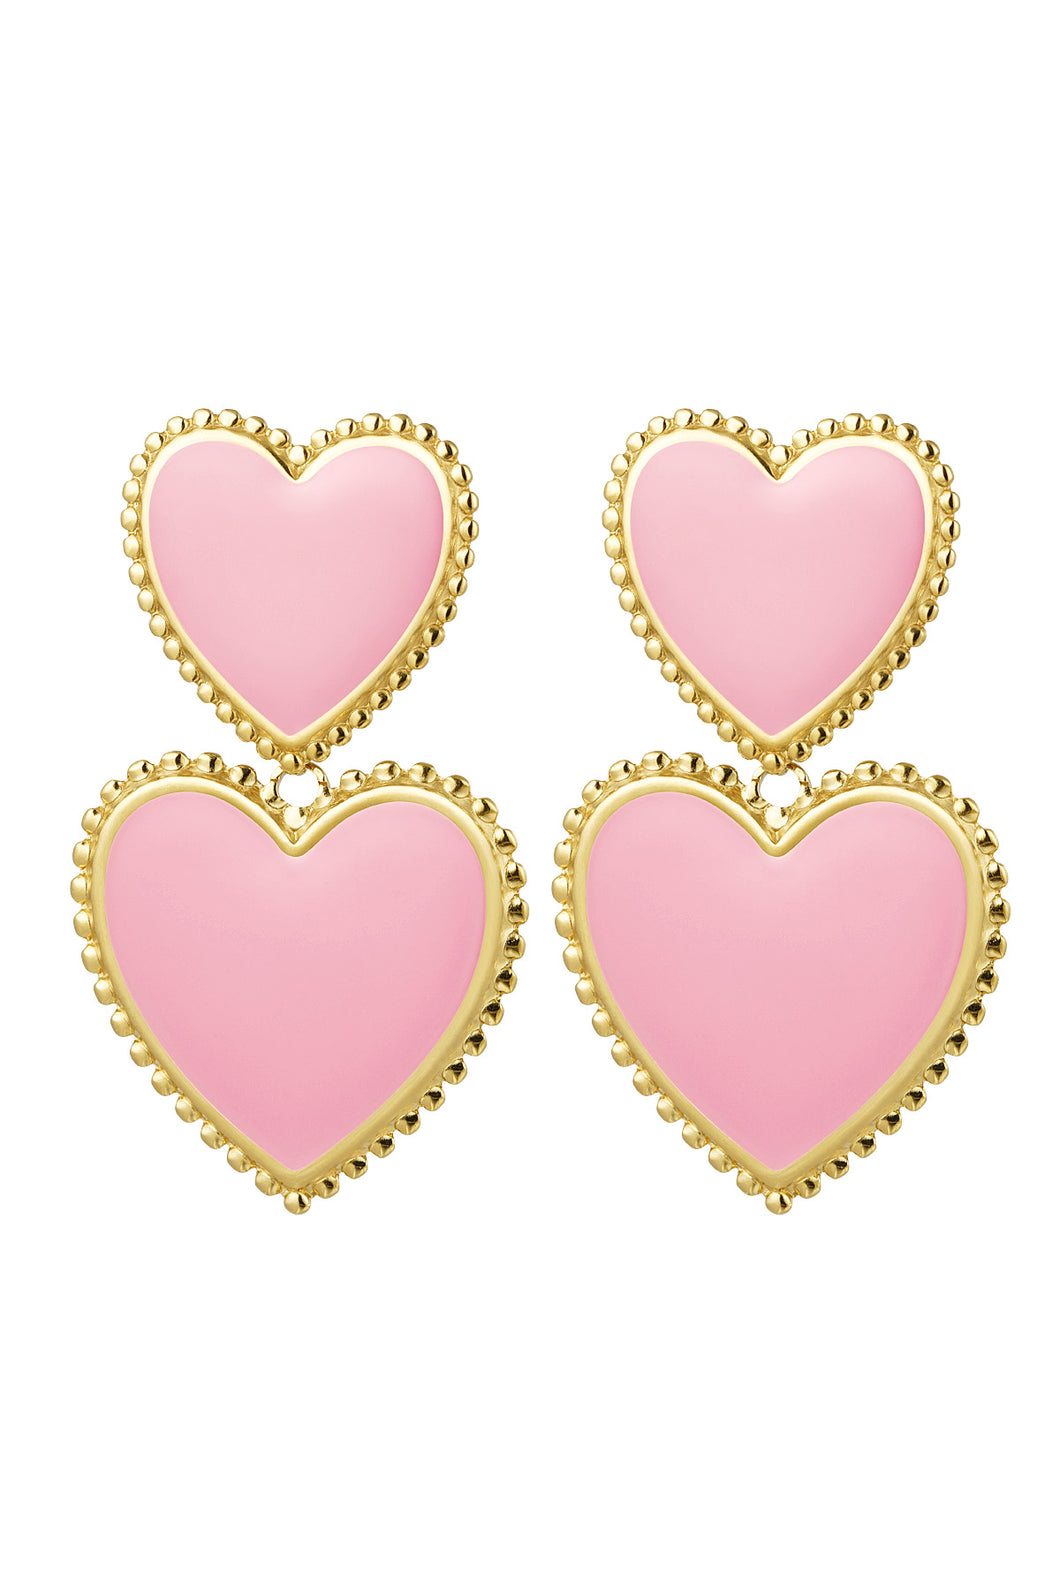 Double Self Love Earrings  - light pink